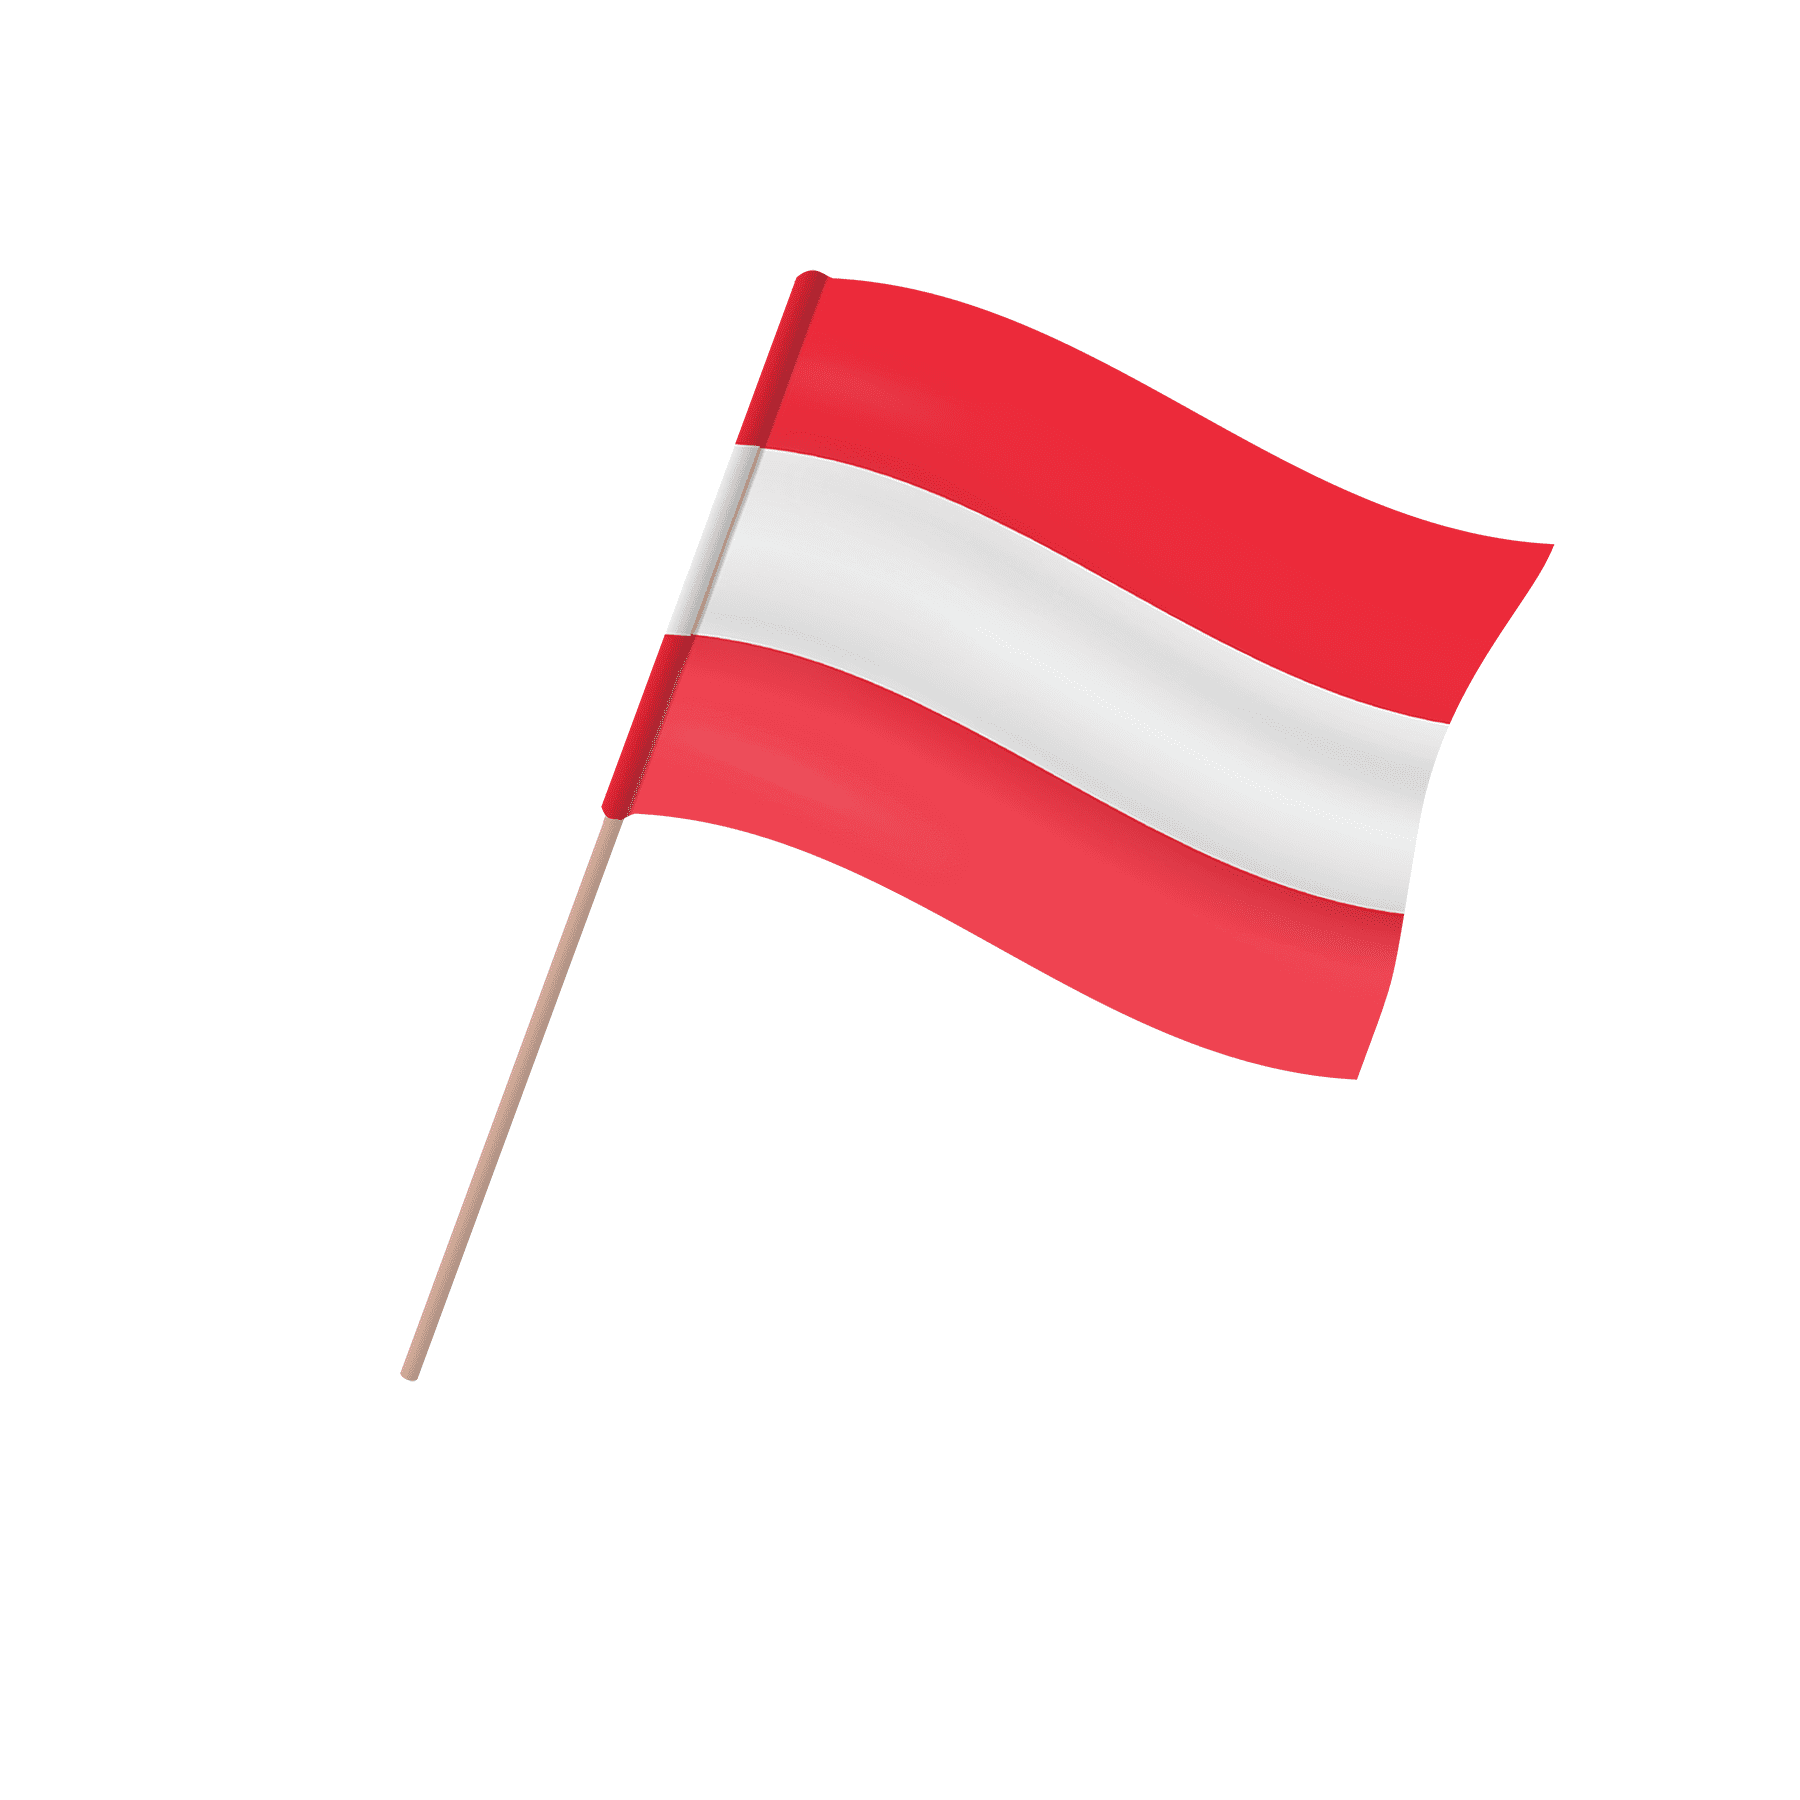 Oesterreich Landesfahne - Fahne Österreich gedruckt / Austria gedruckt